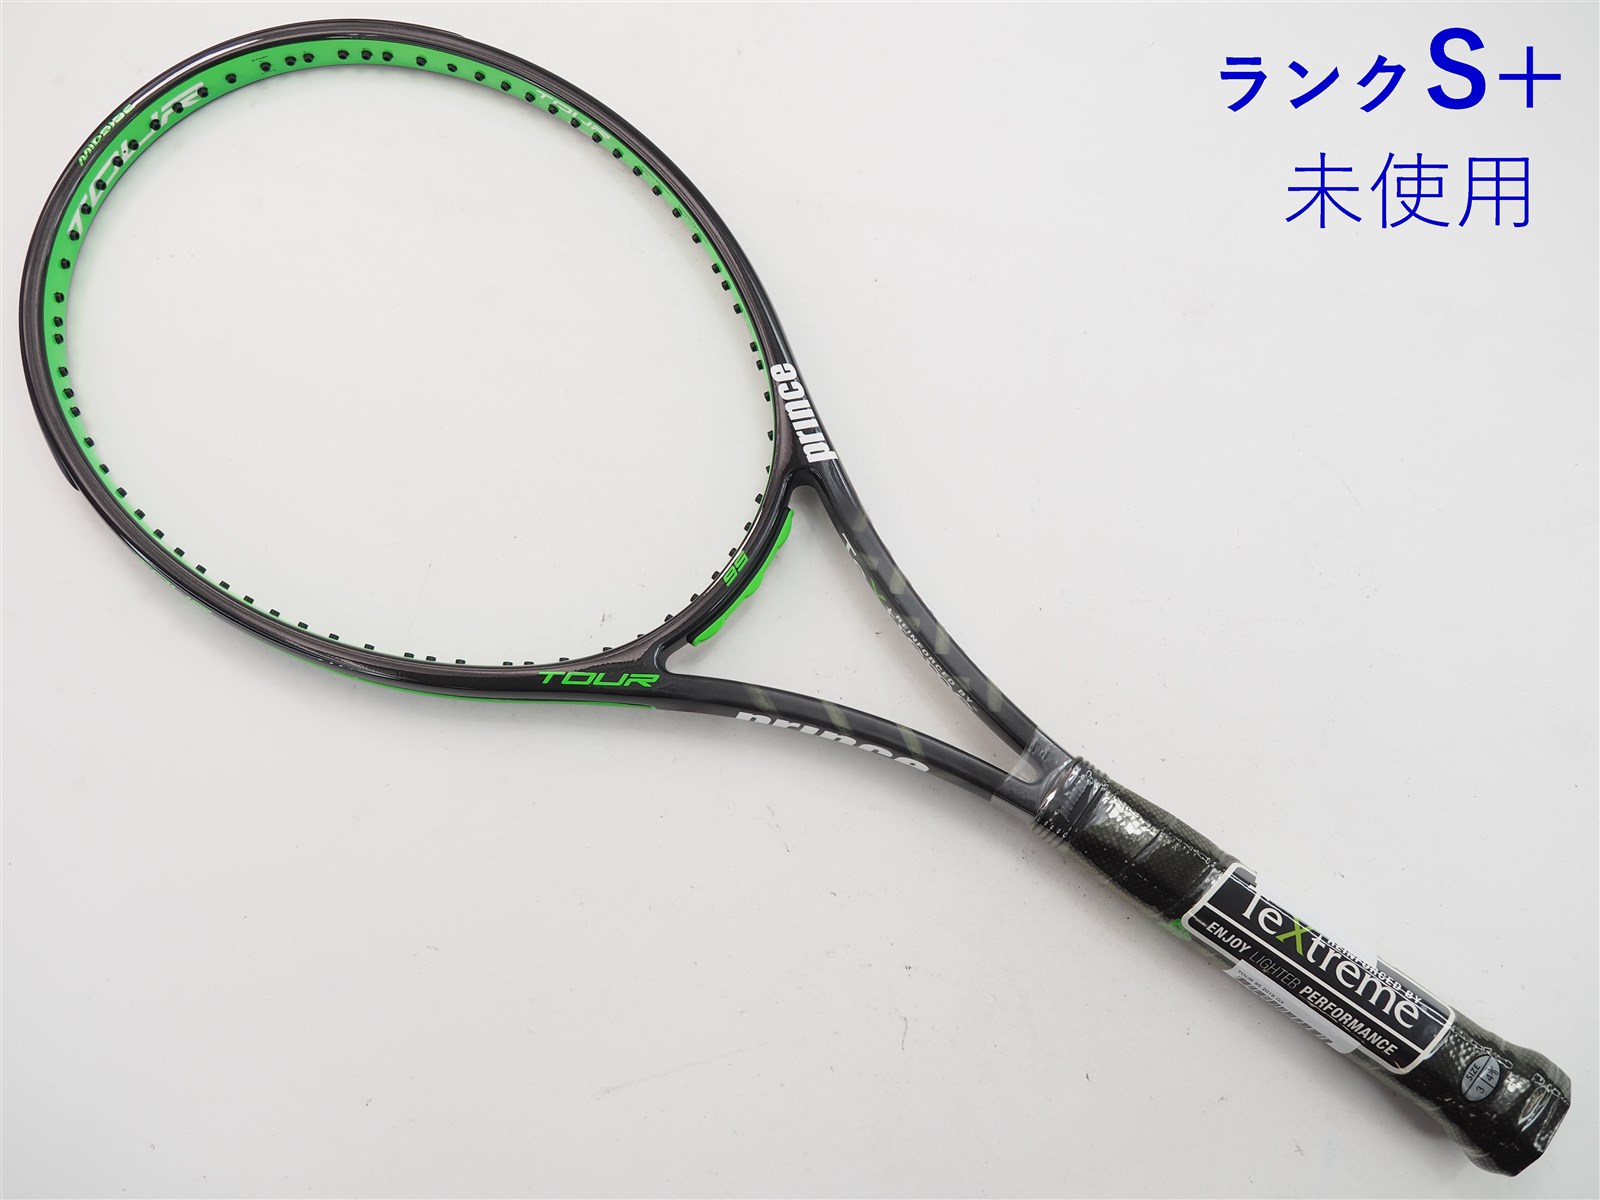 テニスラケット プリンス プリンス エックス 105 (290g) 2018年モデル (G2)PRINCE Prince X 105 (290g) 2018